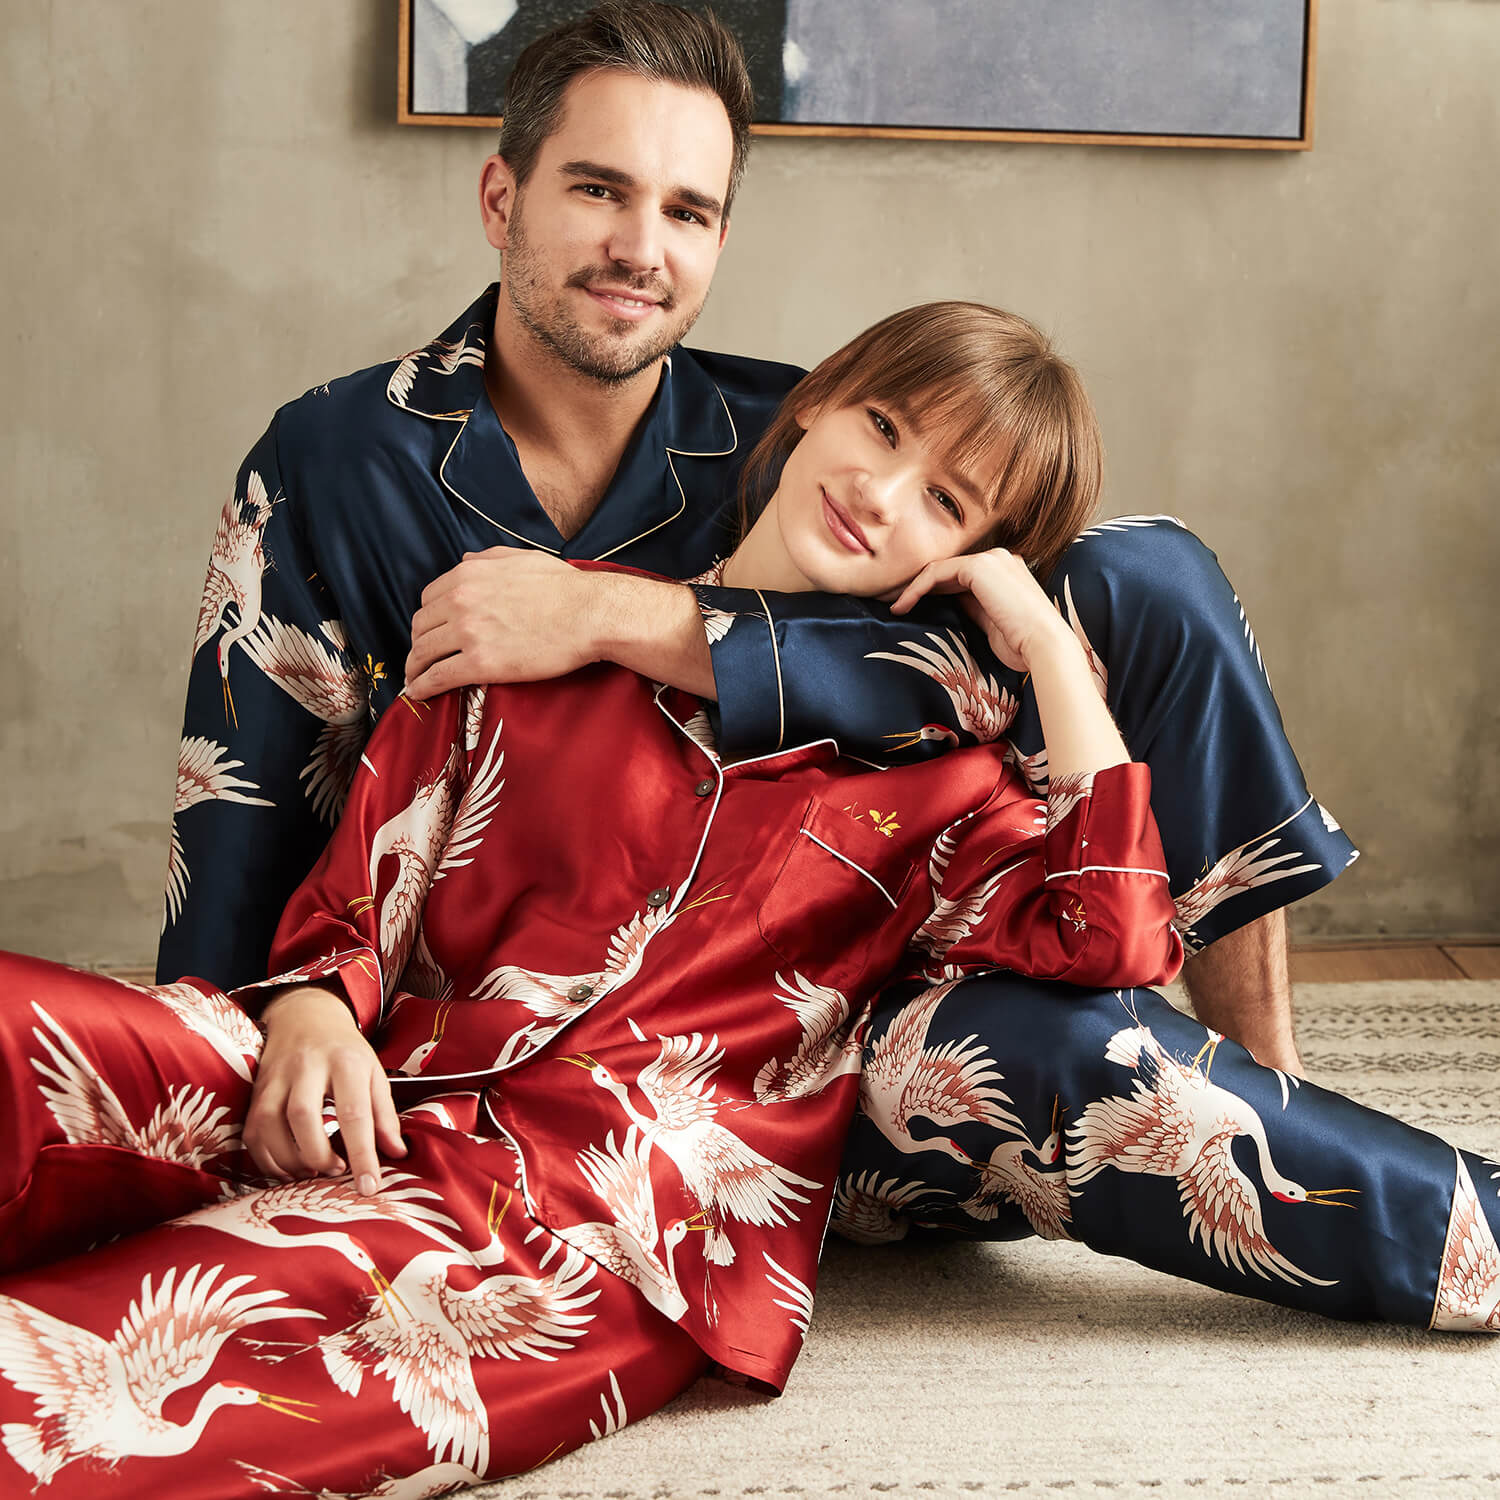 Luxuriöses bedrucktes Seidenpyjama-Set für Paare mit langen Ärmeln, Nachtwäsche, passender Seidenpyjama